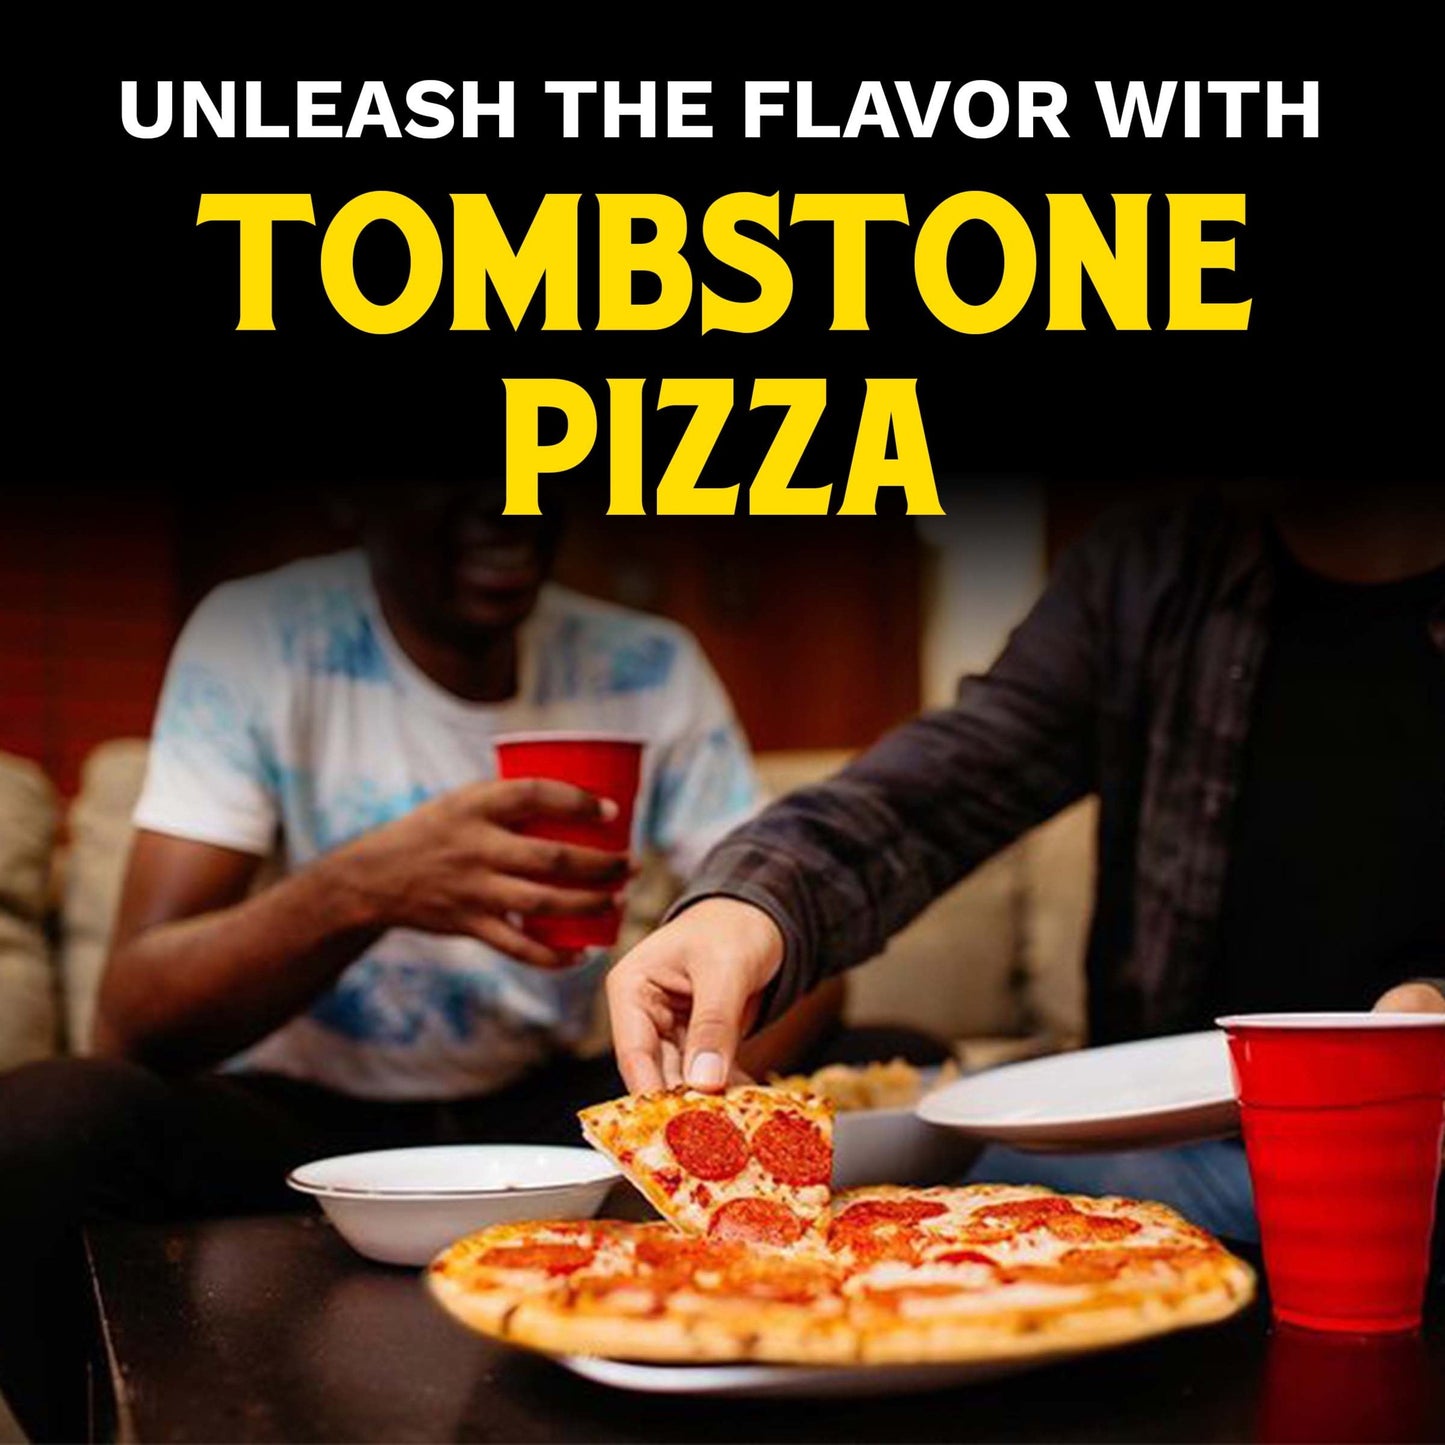 Tombstone Frozen Pizza, Supreme  Original Thin Crust Pizza with Tomato Sauce, 20.8 oz (Frozen)